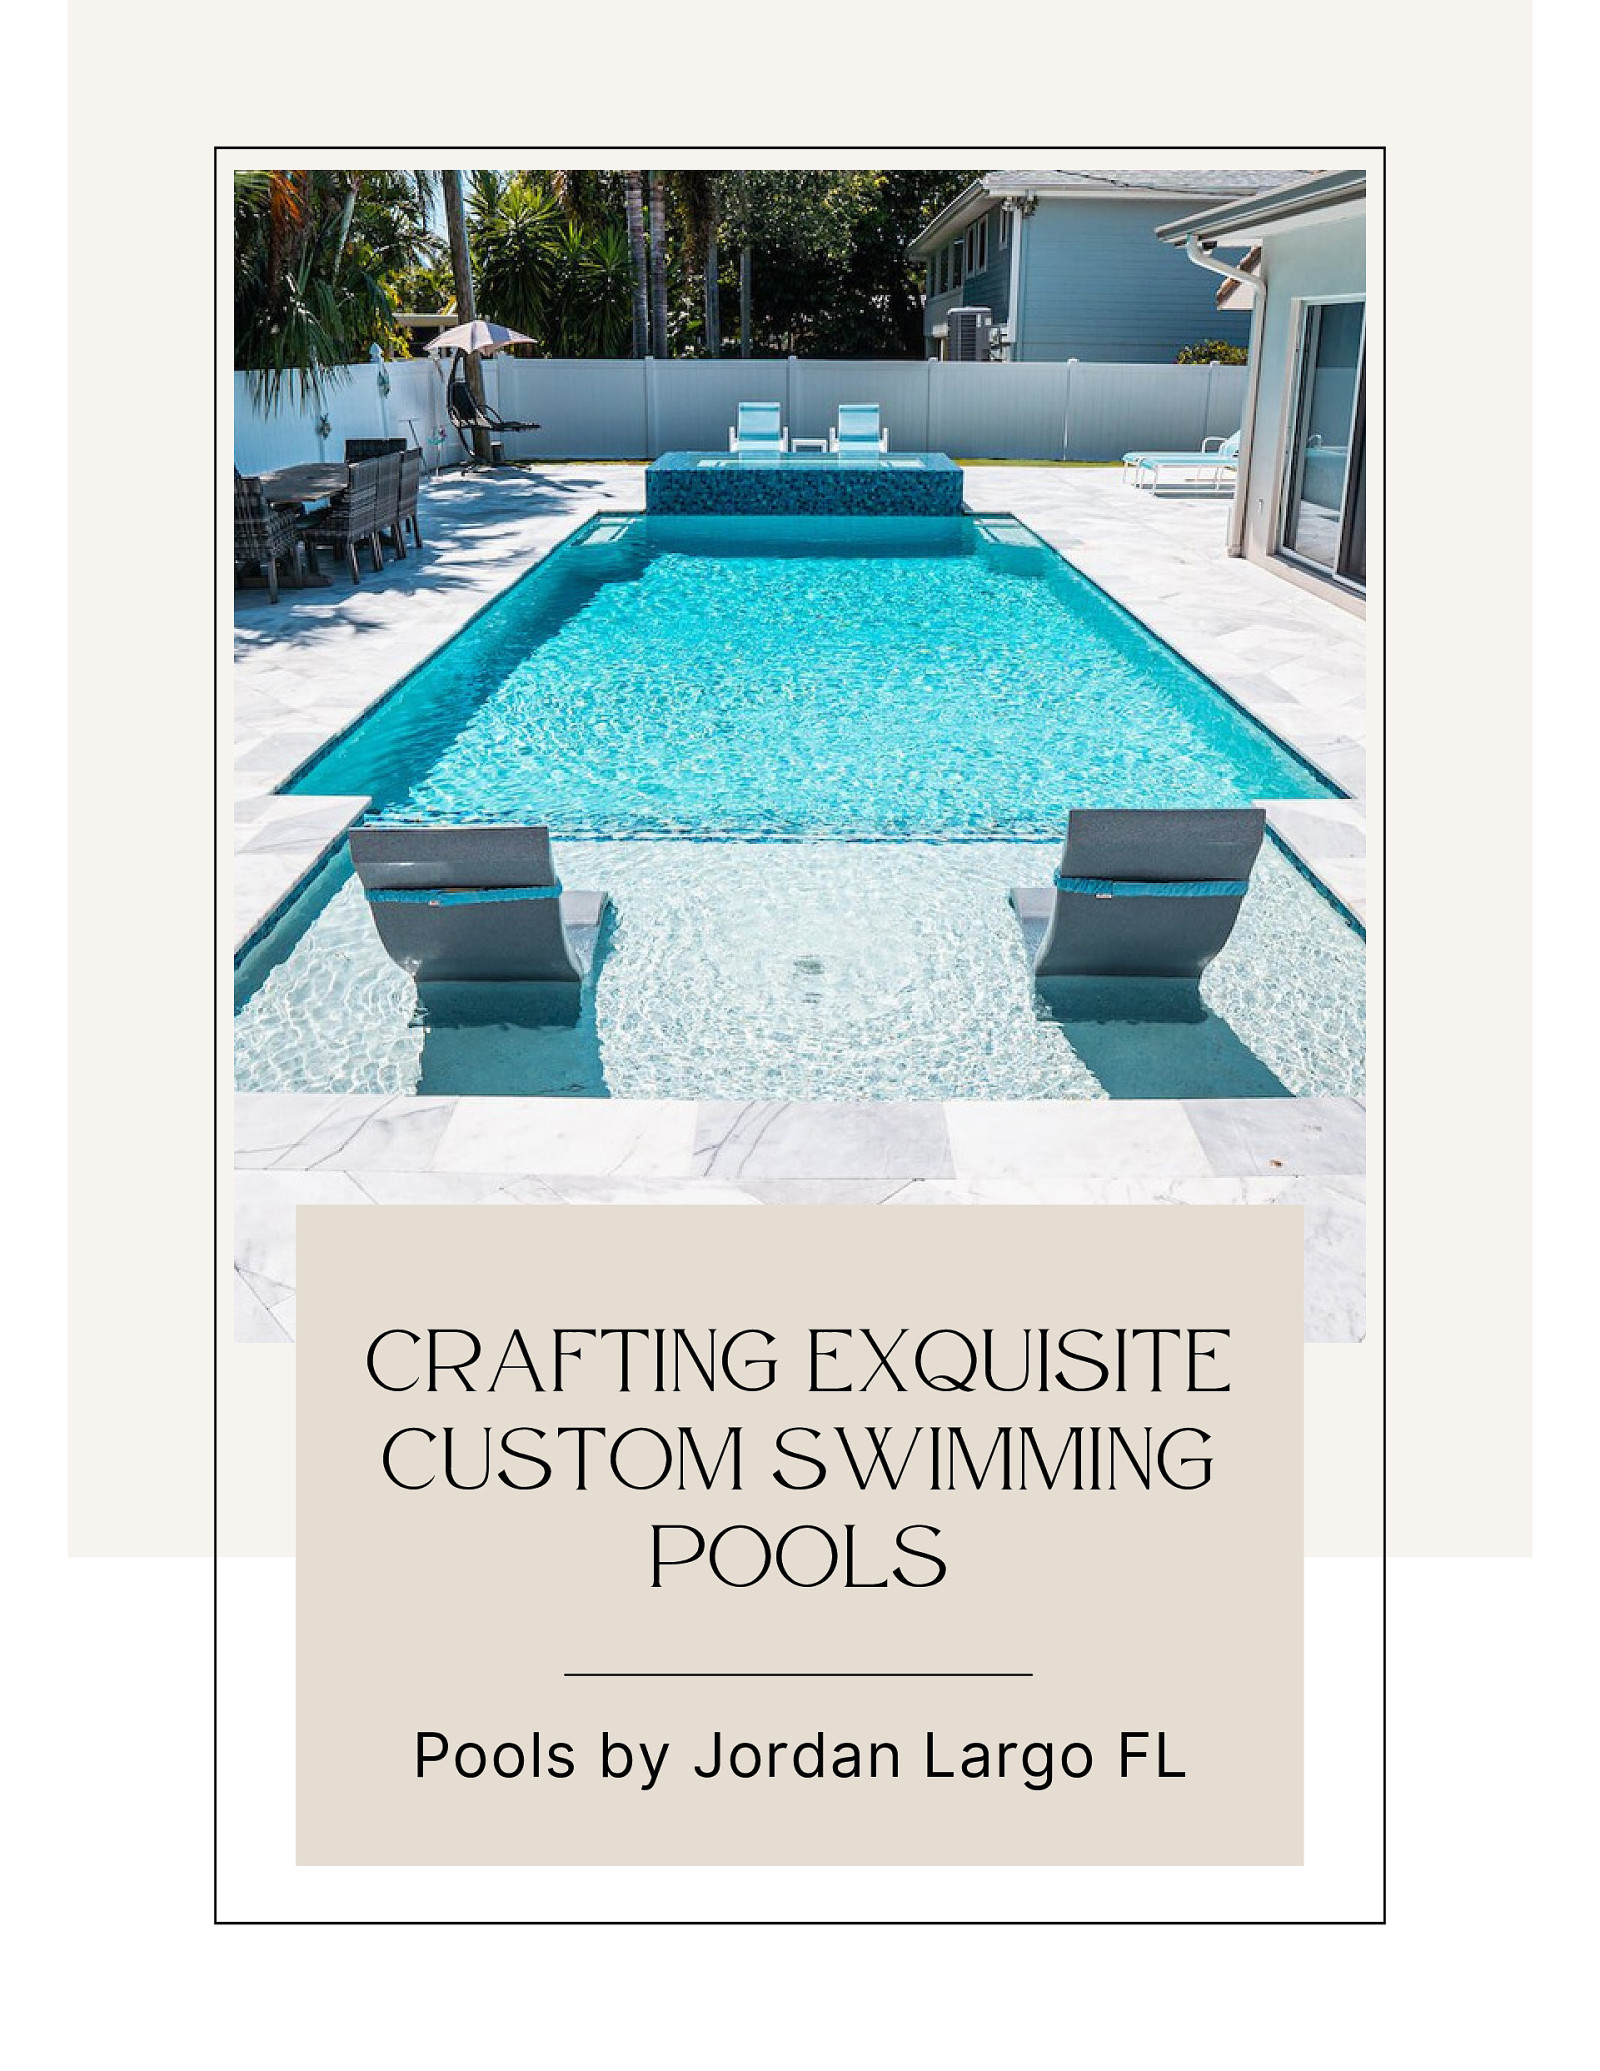 Pools by Jordan Largo FL Crafting Exquisite Custom Swimming Pools